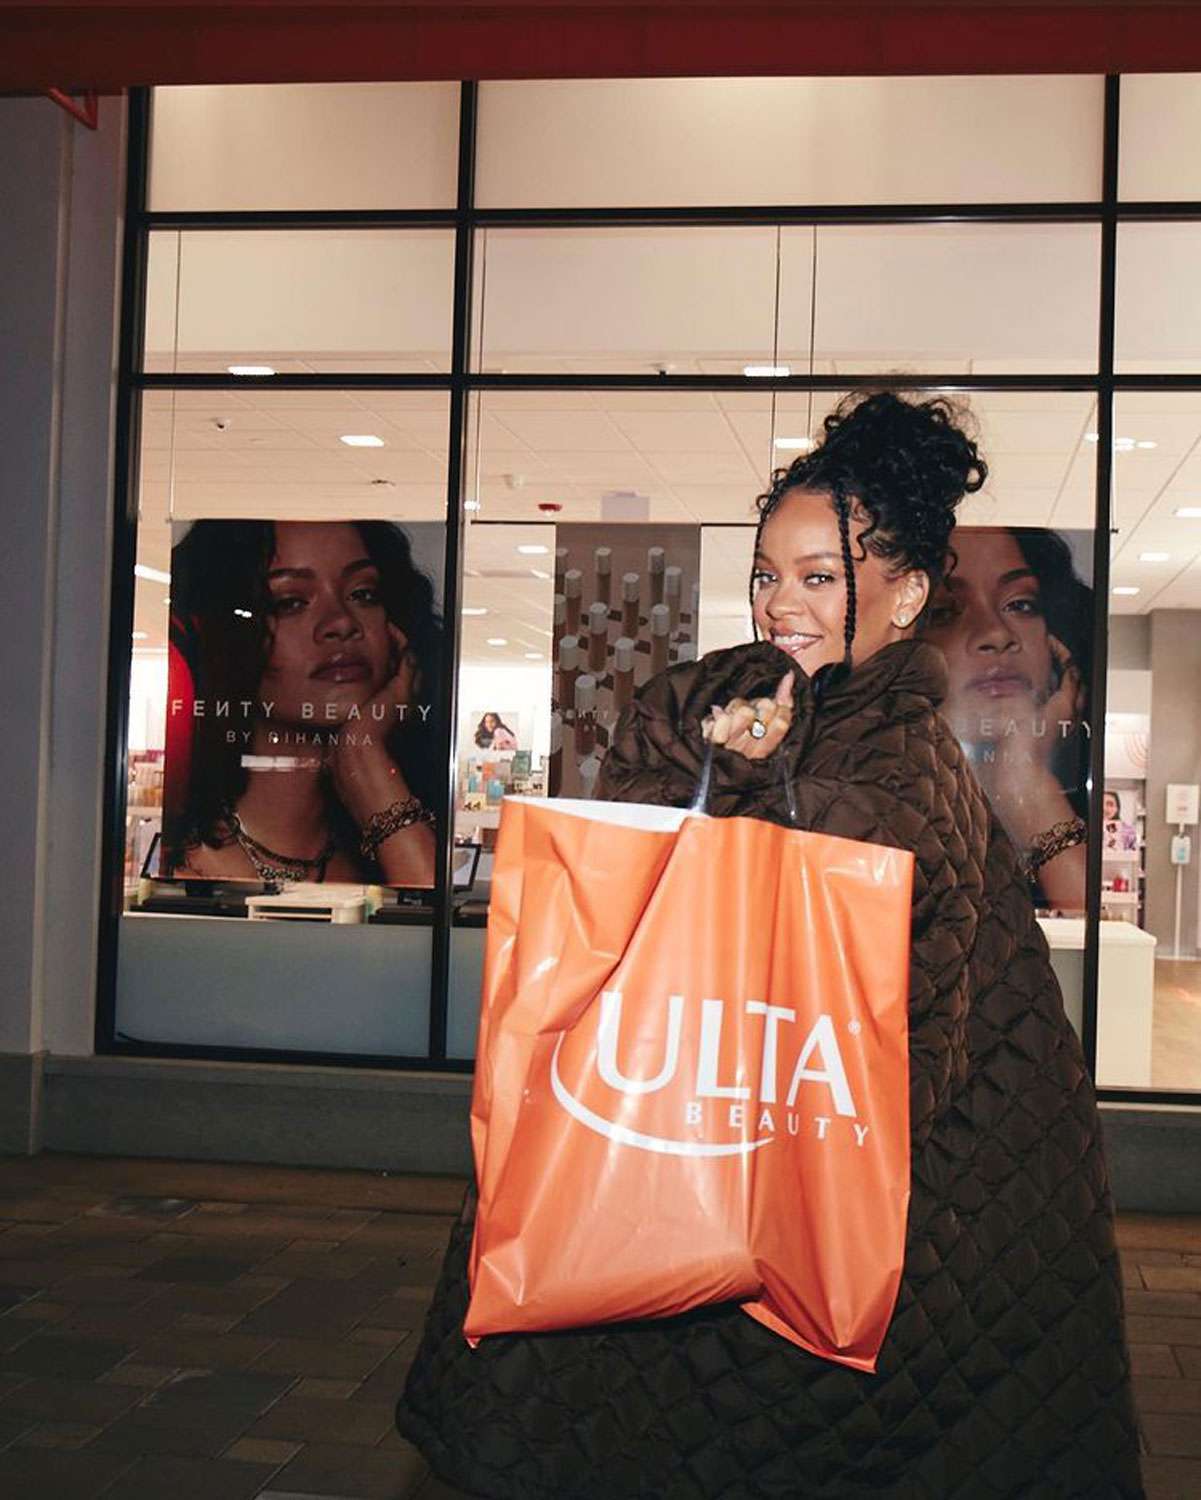 Rihanna annuncia che porterà Fenty Beauty a Ulta con il servizio fotografico del parcheggio: "In My Ulta Bag"